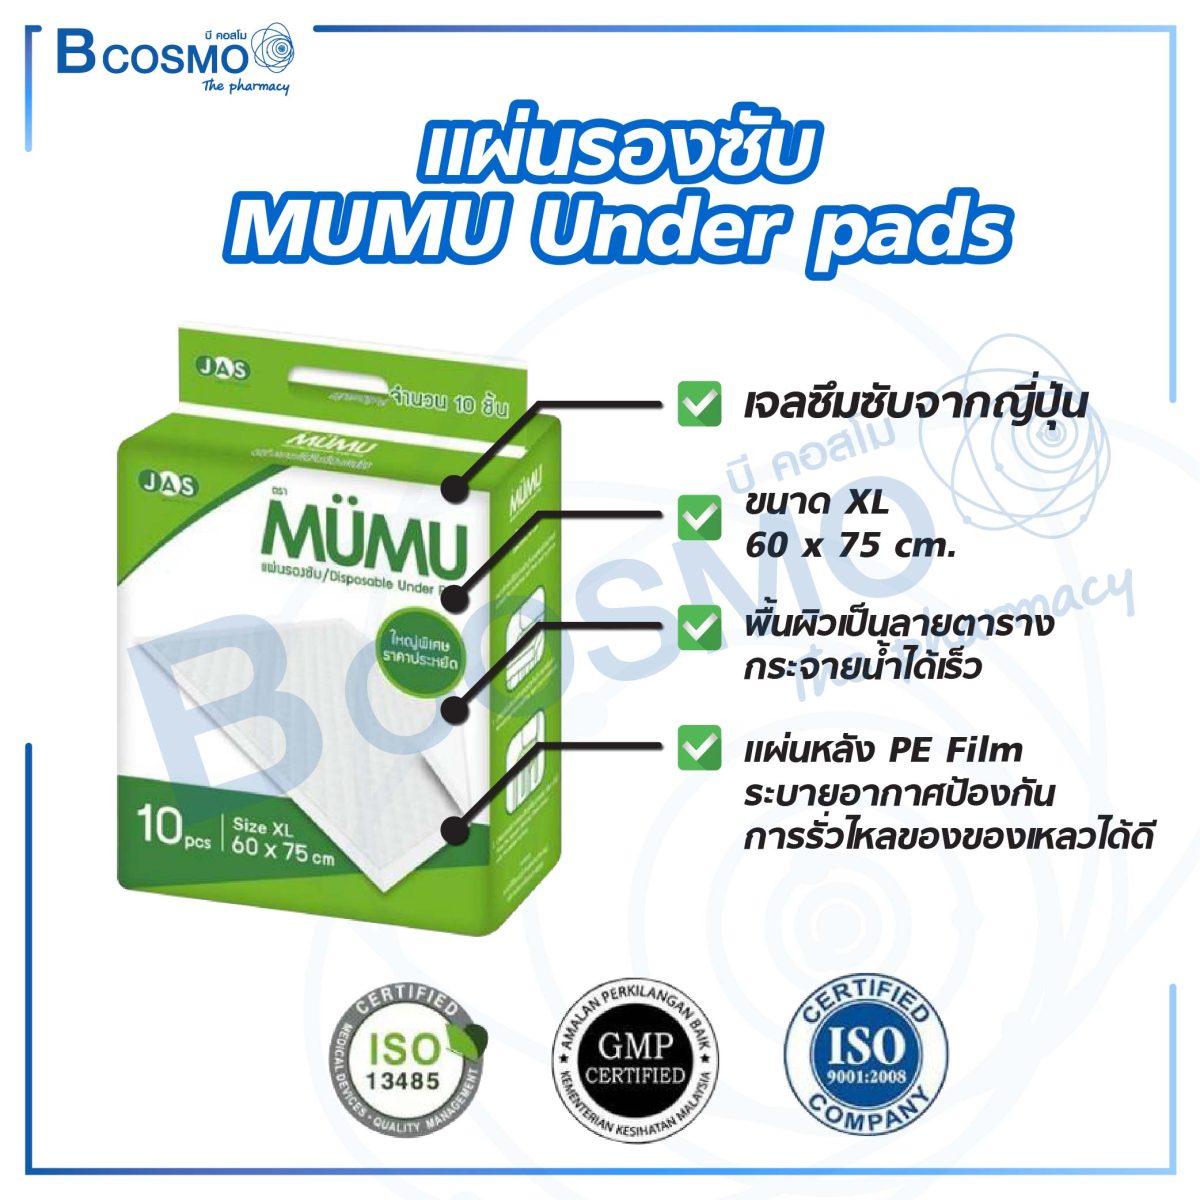 แผ่นรองซับ MUMU Under pads Size XL 60 x 75 cm. [10 ชิ้น]